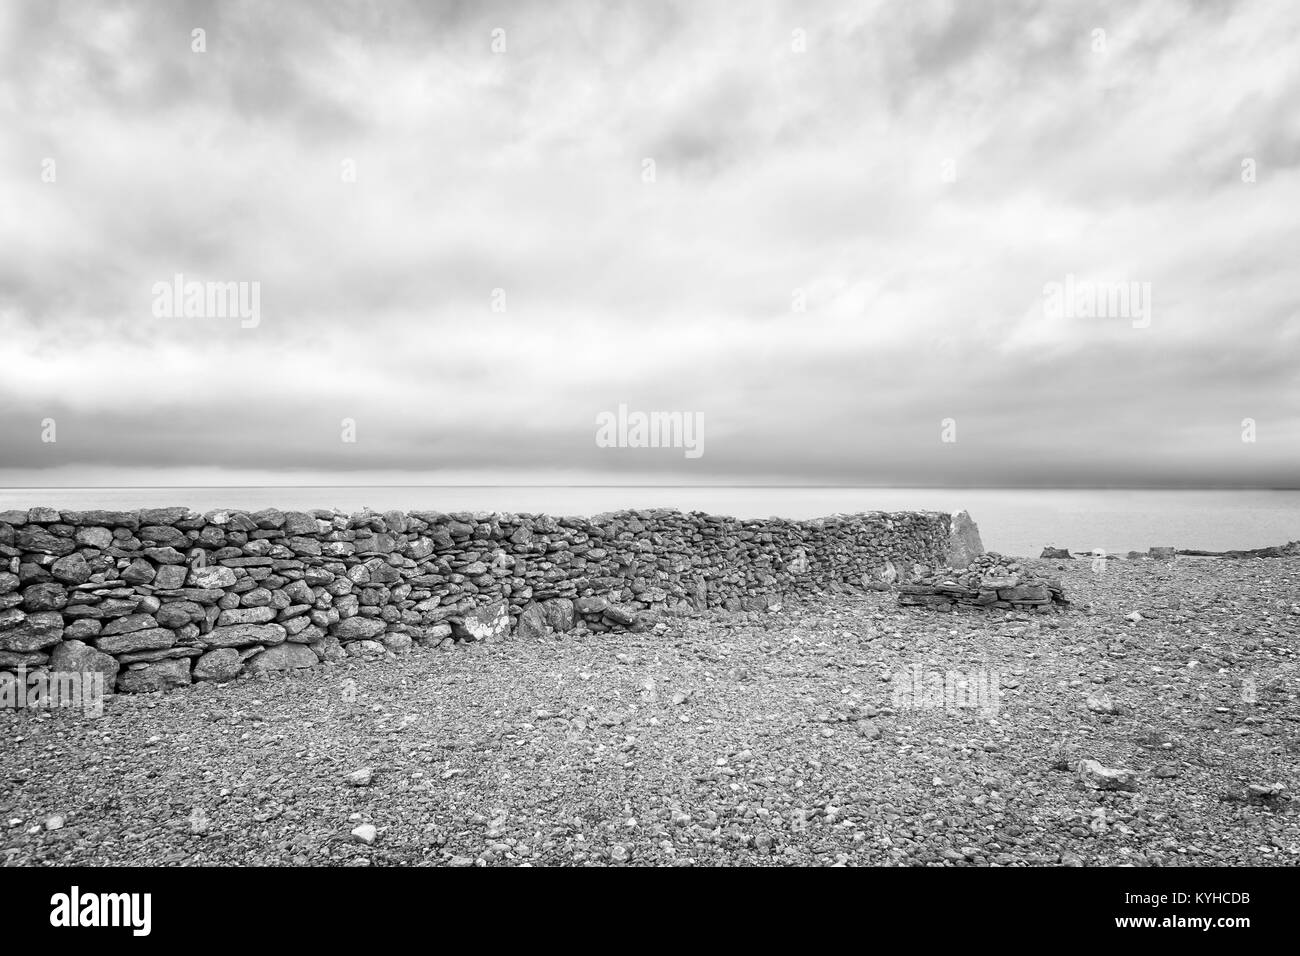 Alte Mauer aus Stein, die auf einem felsigen Strand verläuft senkrecht zur Kante des Meeres. Moody geheimnisvolle Szene. Schwere Wolken. Schwarz und Weiß. Faro, Schweden Stockfoto